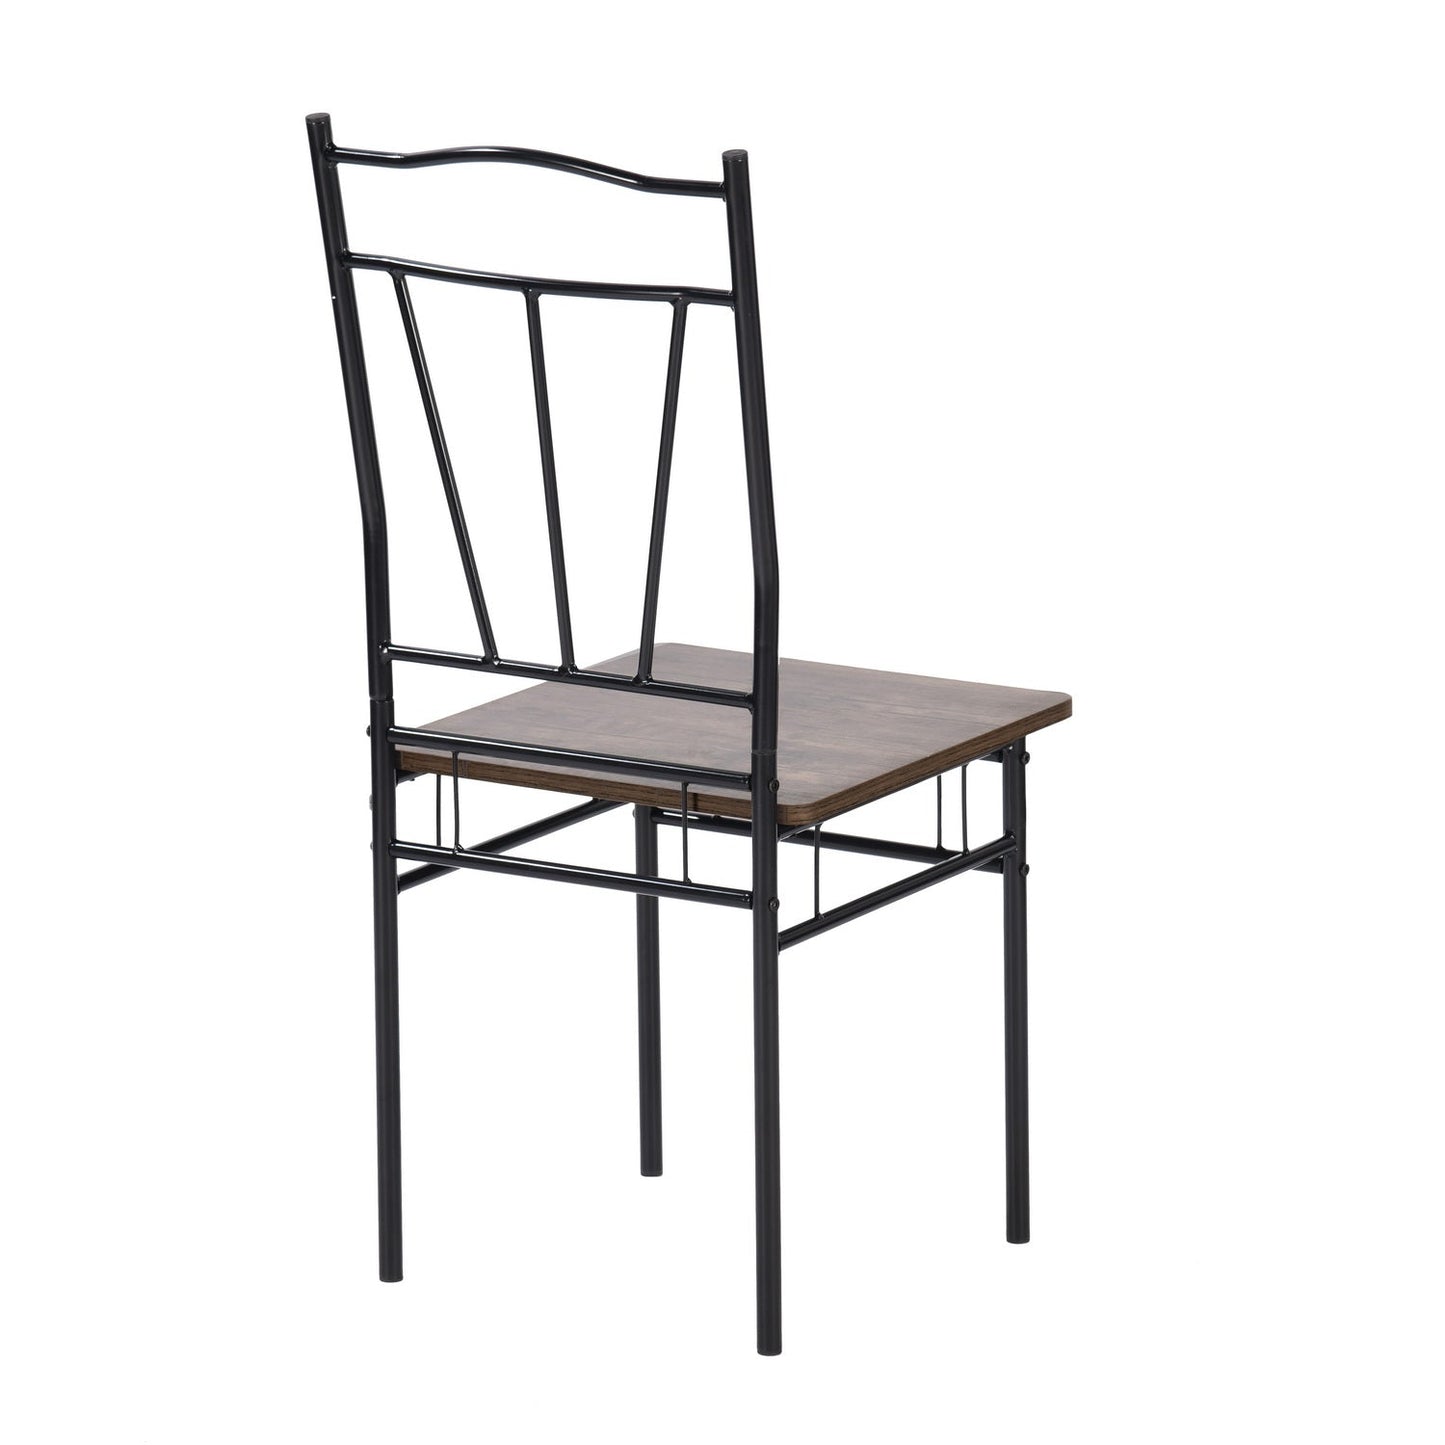 Lot de 8 chaises pieds en Métal nior de style industriel, chaises salle à manger, salon, 40x40x90 cm